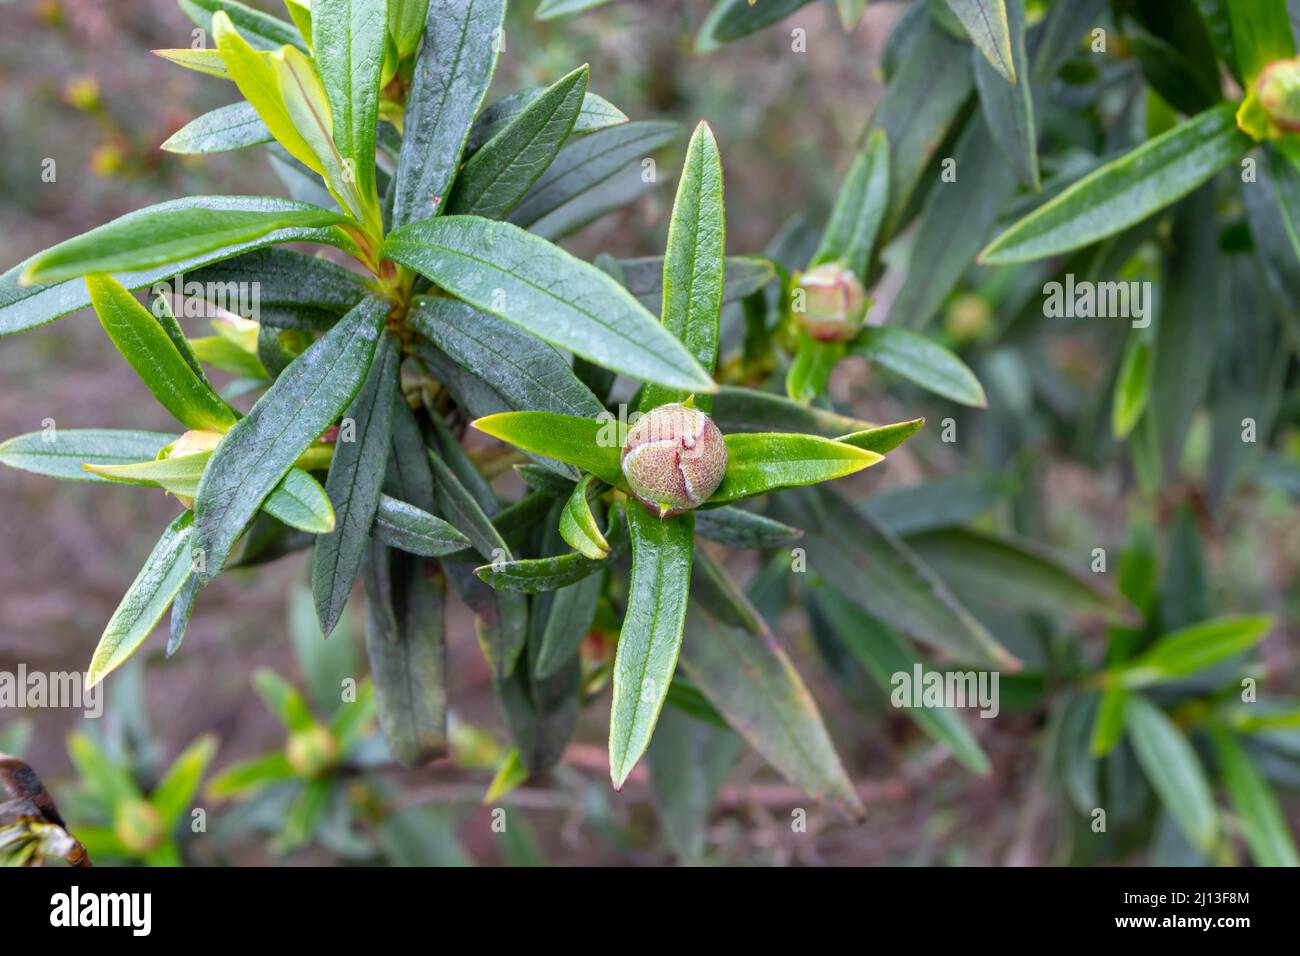 Cistus ladanifer or labdanum plant. Gum rockrose bud and leaves Stock Photo